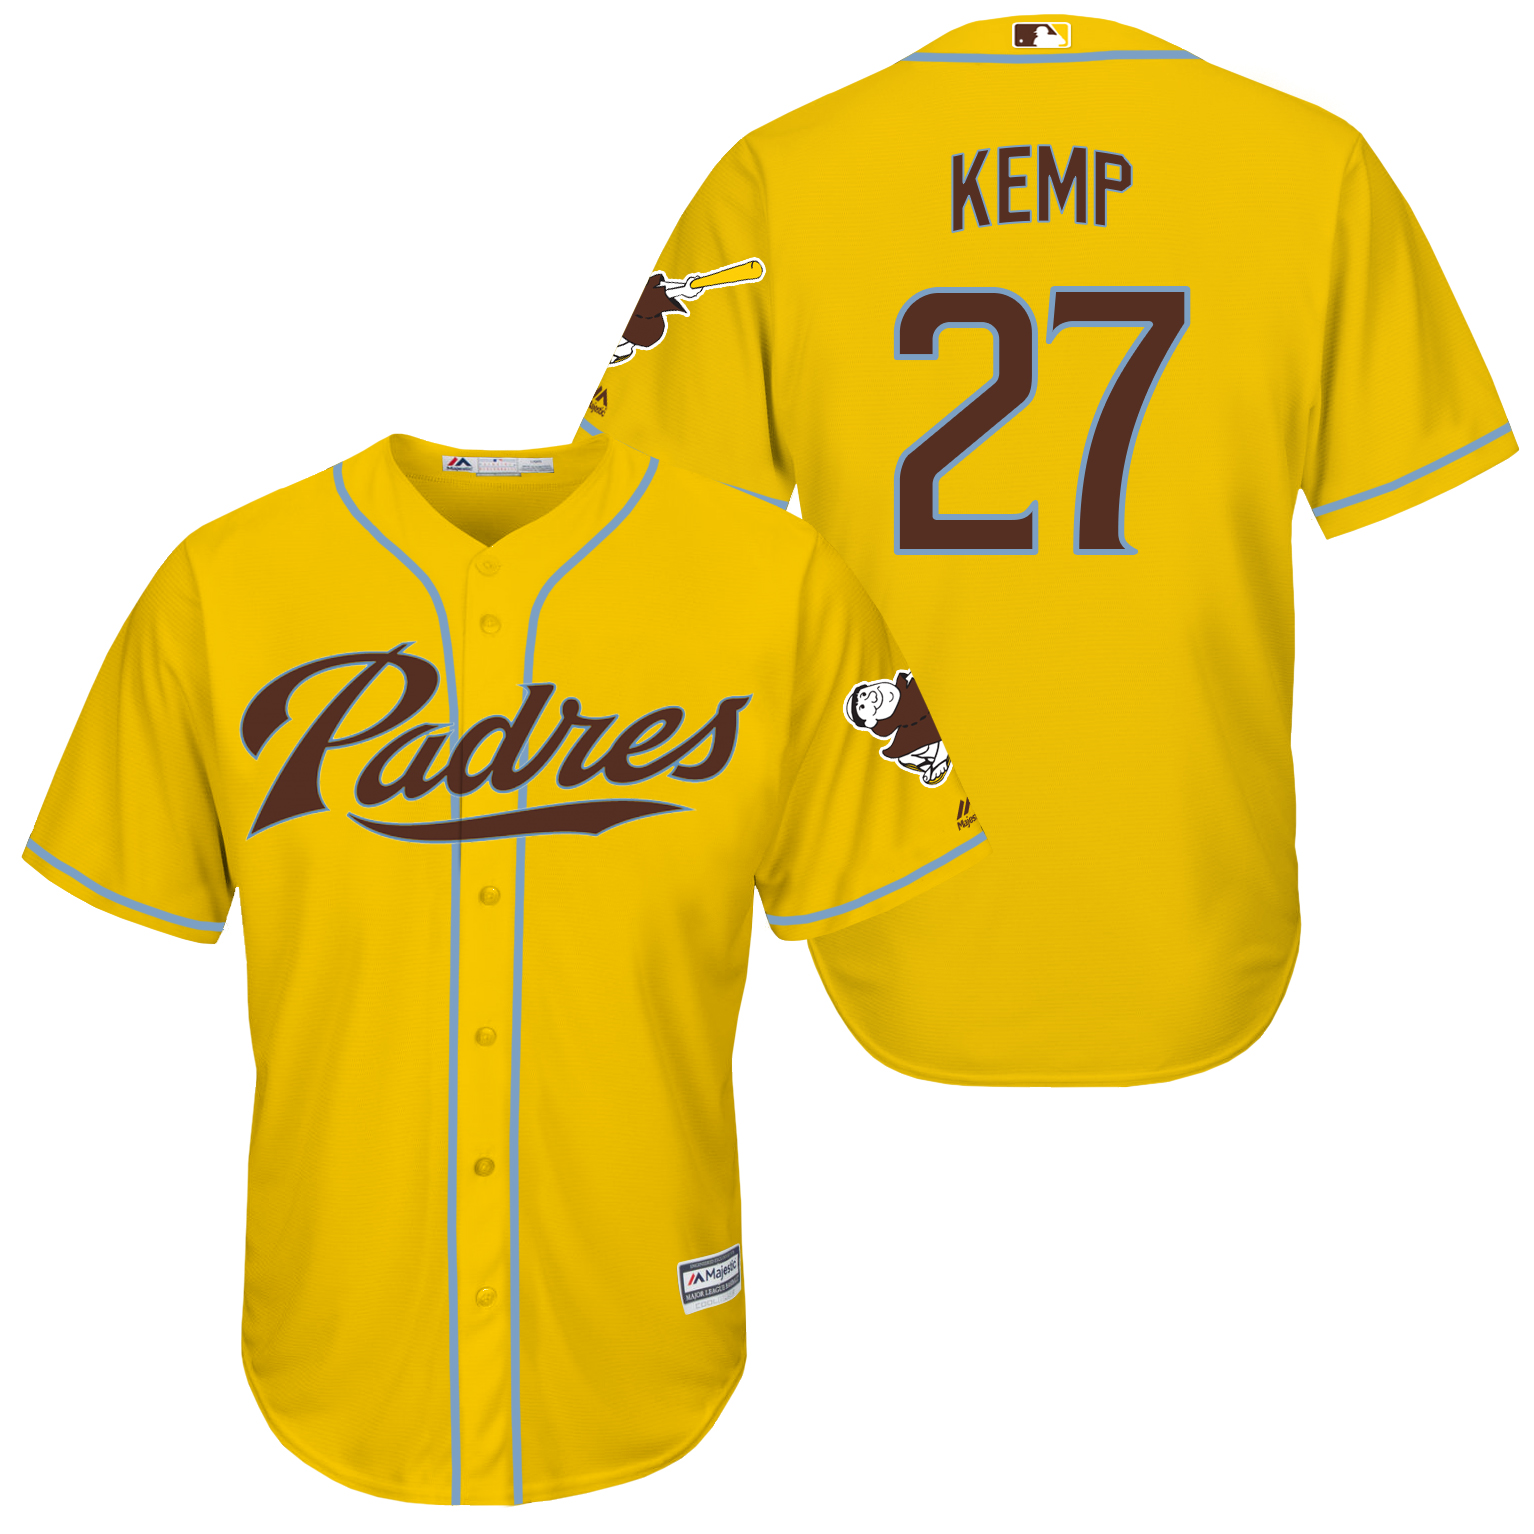 Padres 27 Matt Kemp Yellow New Cool Base Jersey